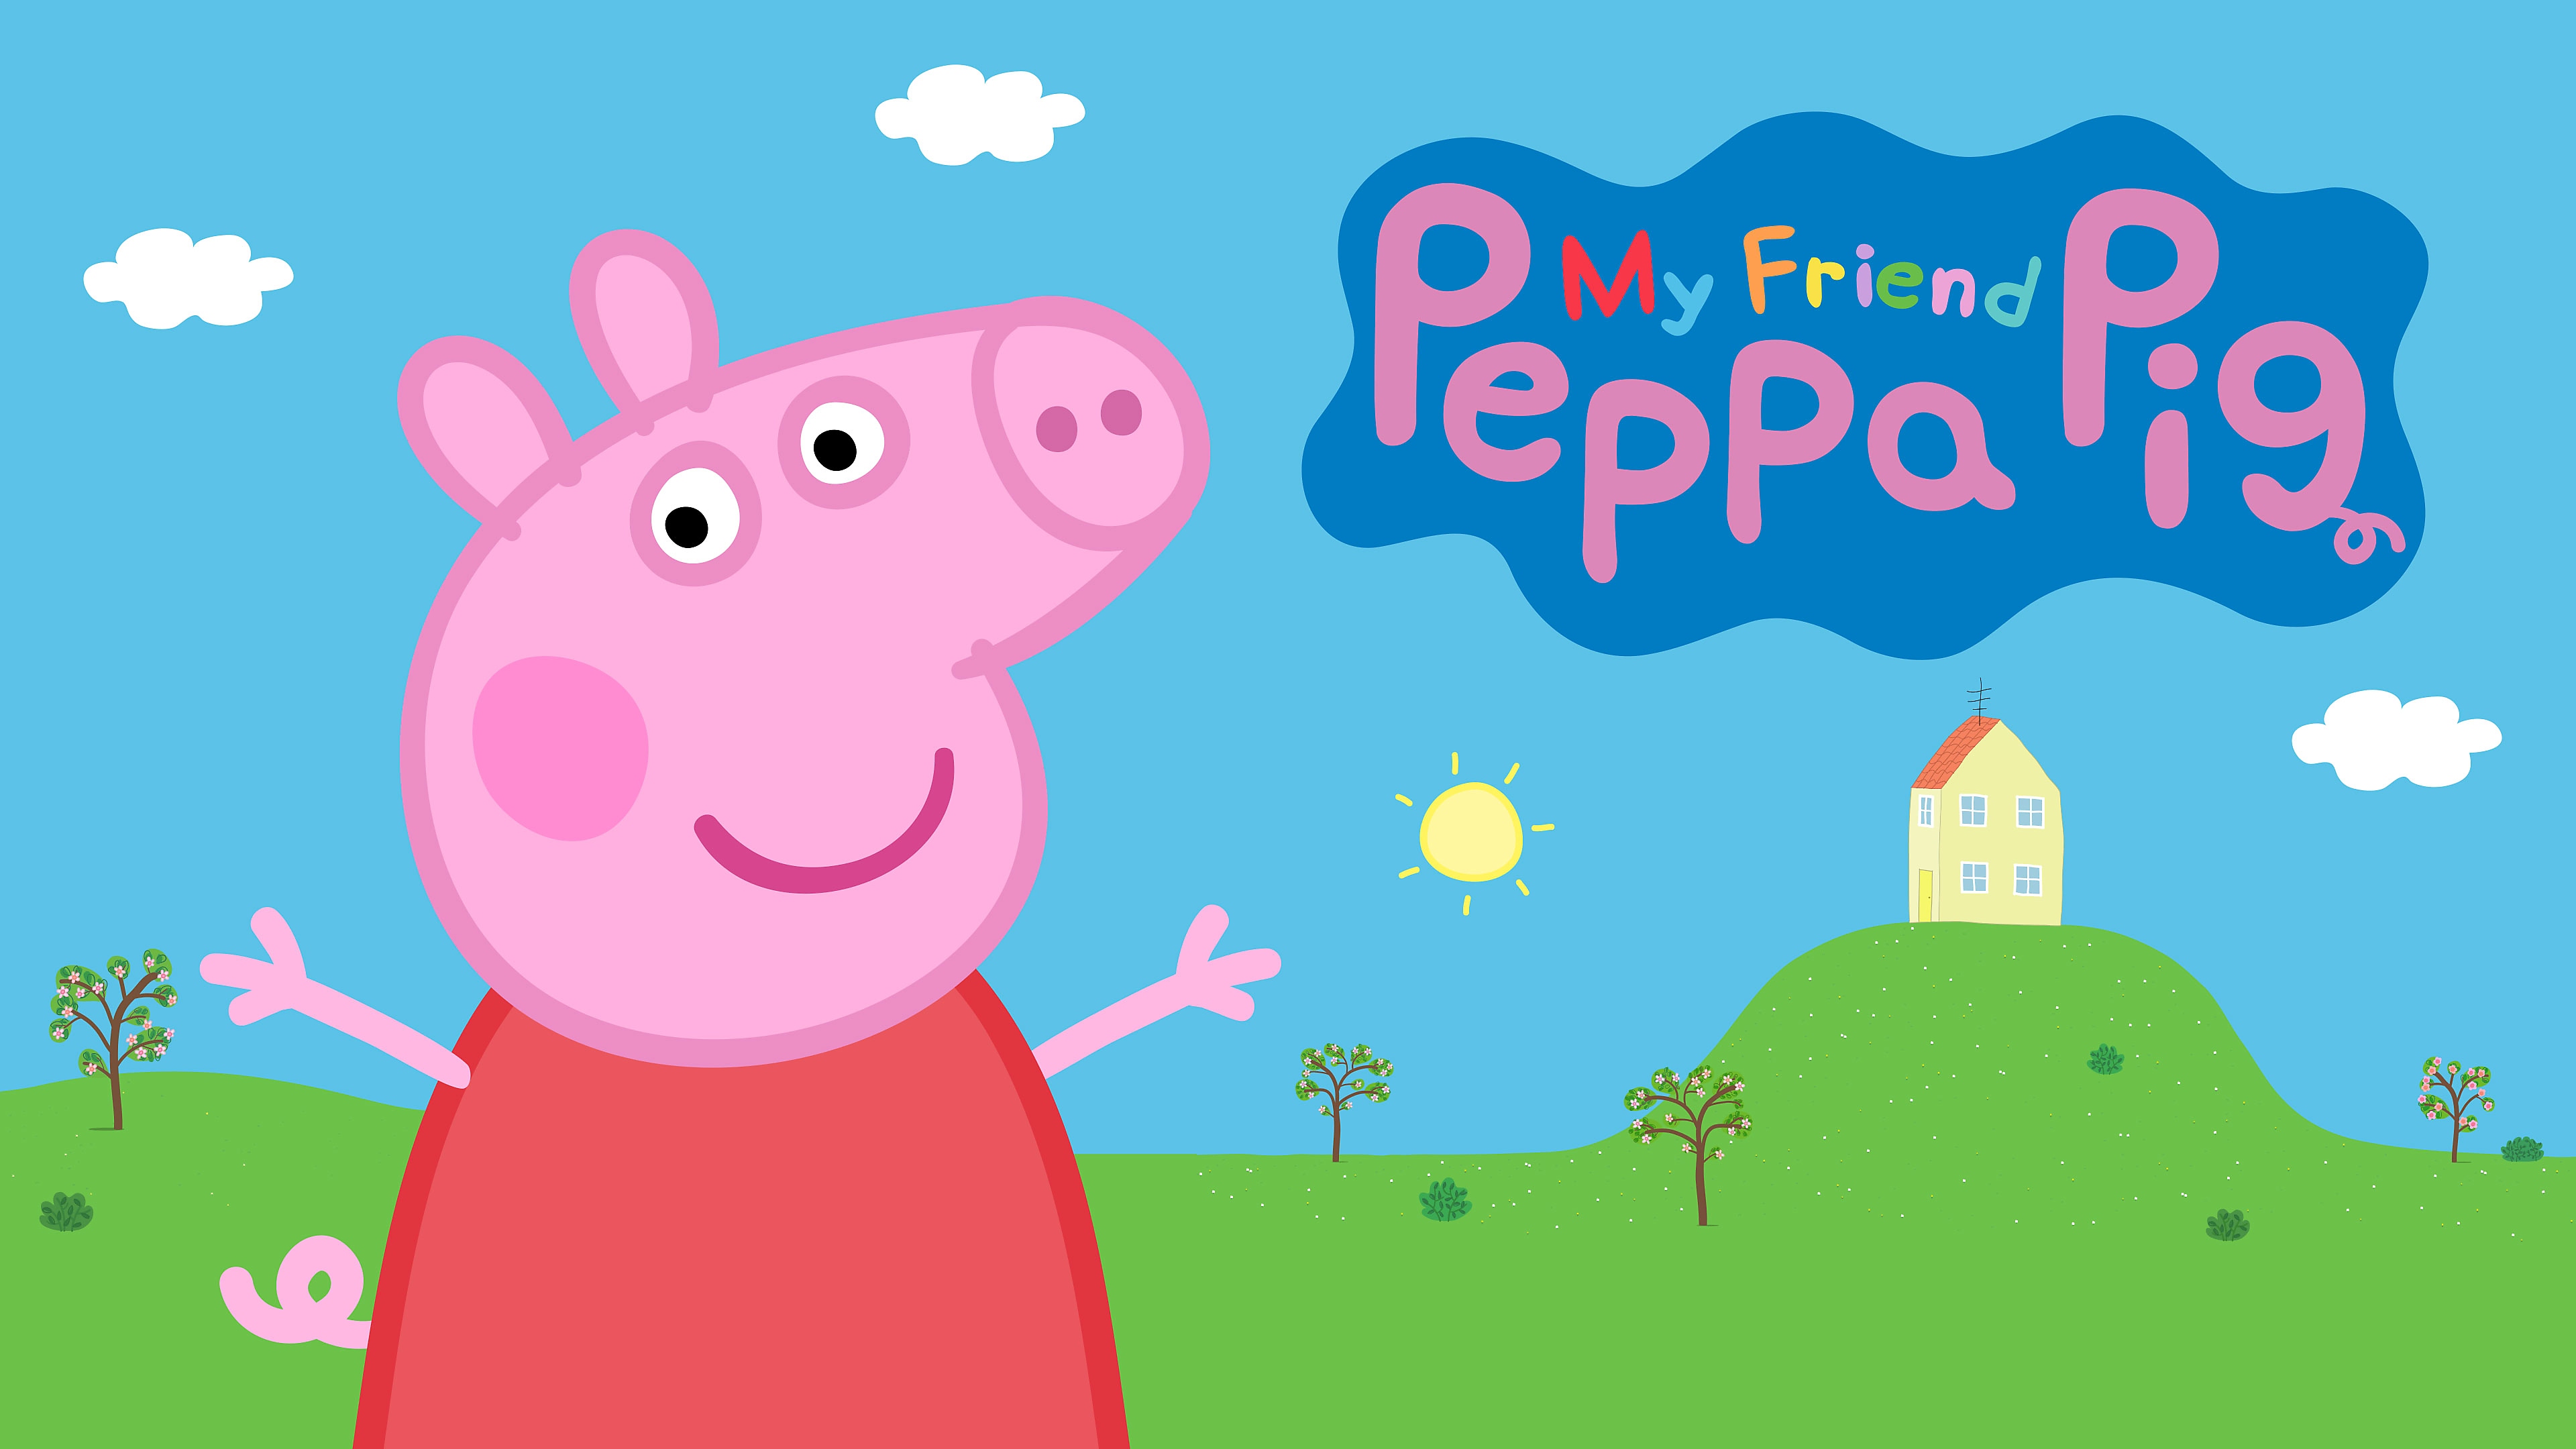 Peppa, PS4 ve PS5 için My Friend Peppa Pig’deki evinin önünde el sallıyor